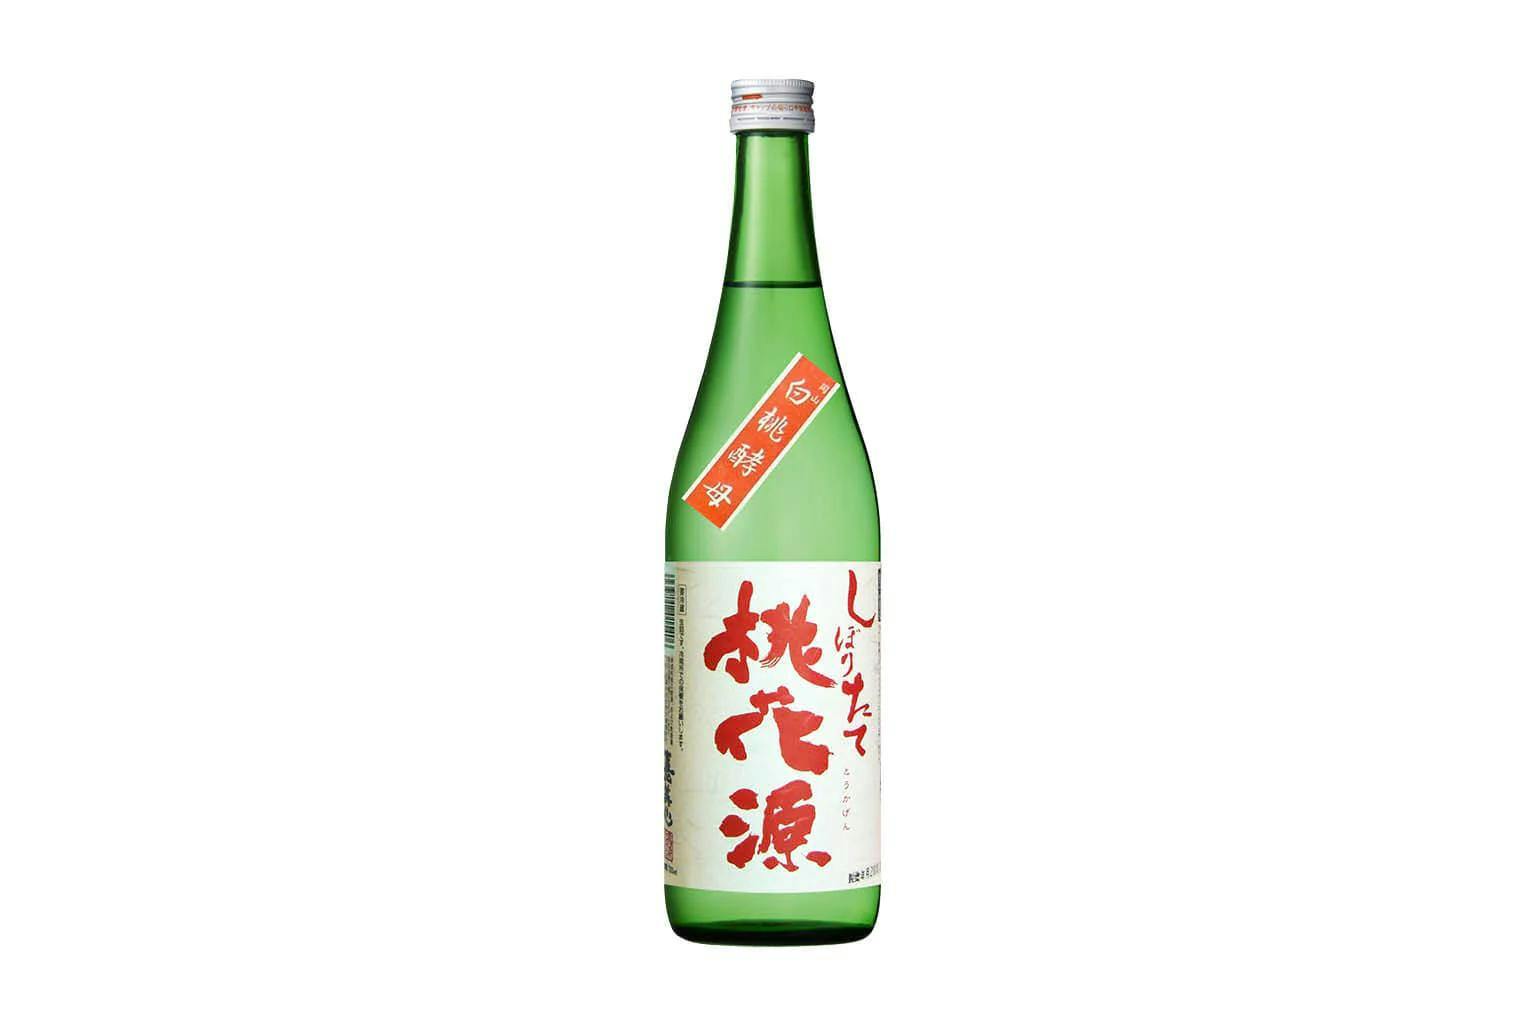 Bottle of Kamikokoro Tokagen Shiboritate